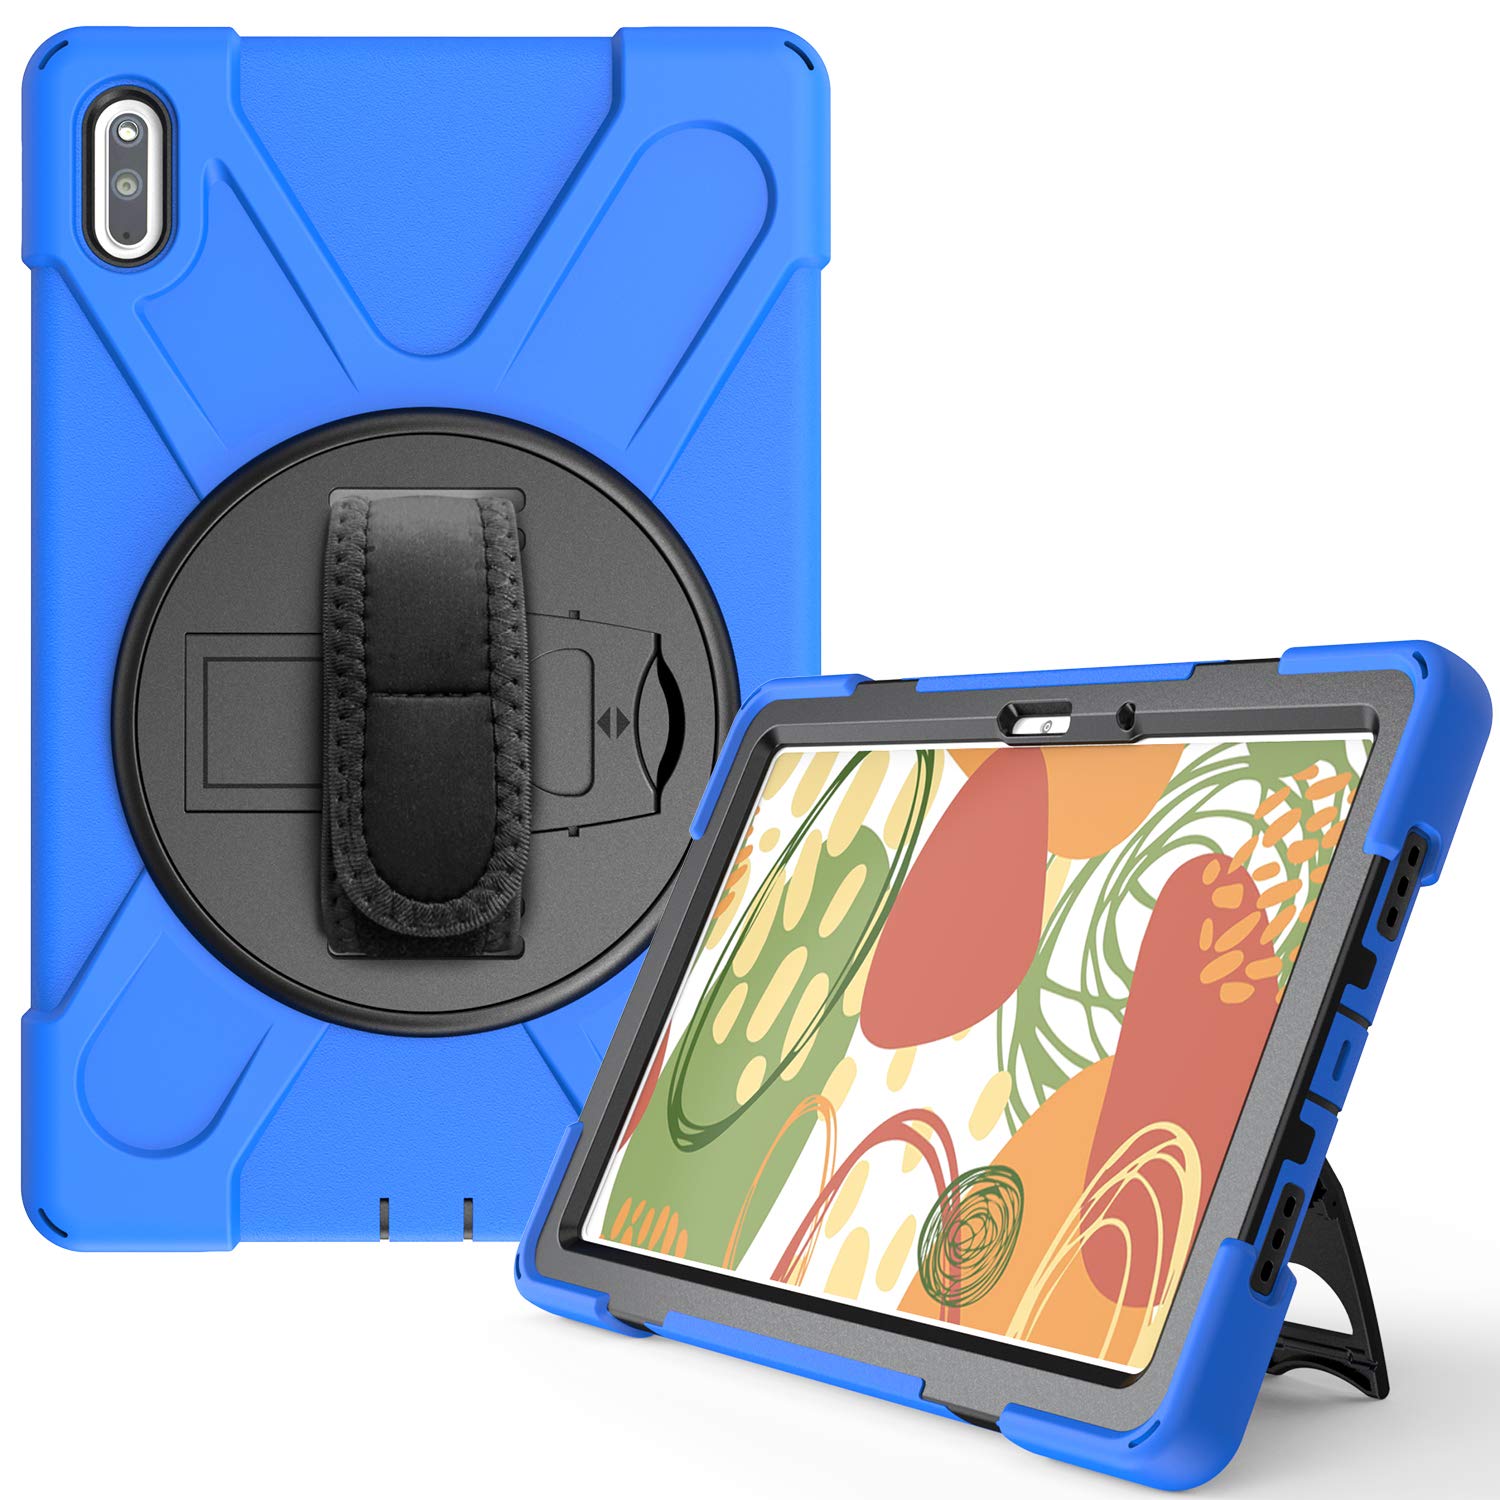 YGoal Hülle für Huawei MatePad 10.4 - [Handschlaufe] [Schultergurt] Robuste Schutzhülle mit Fallschutz Case Cover für Huawei MatePad 10.4 Zoll, Blau